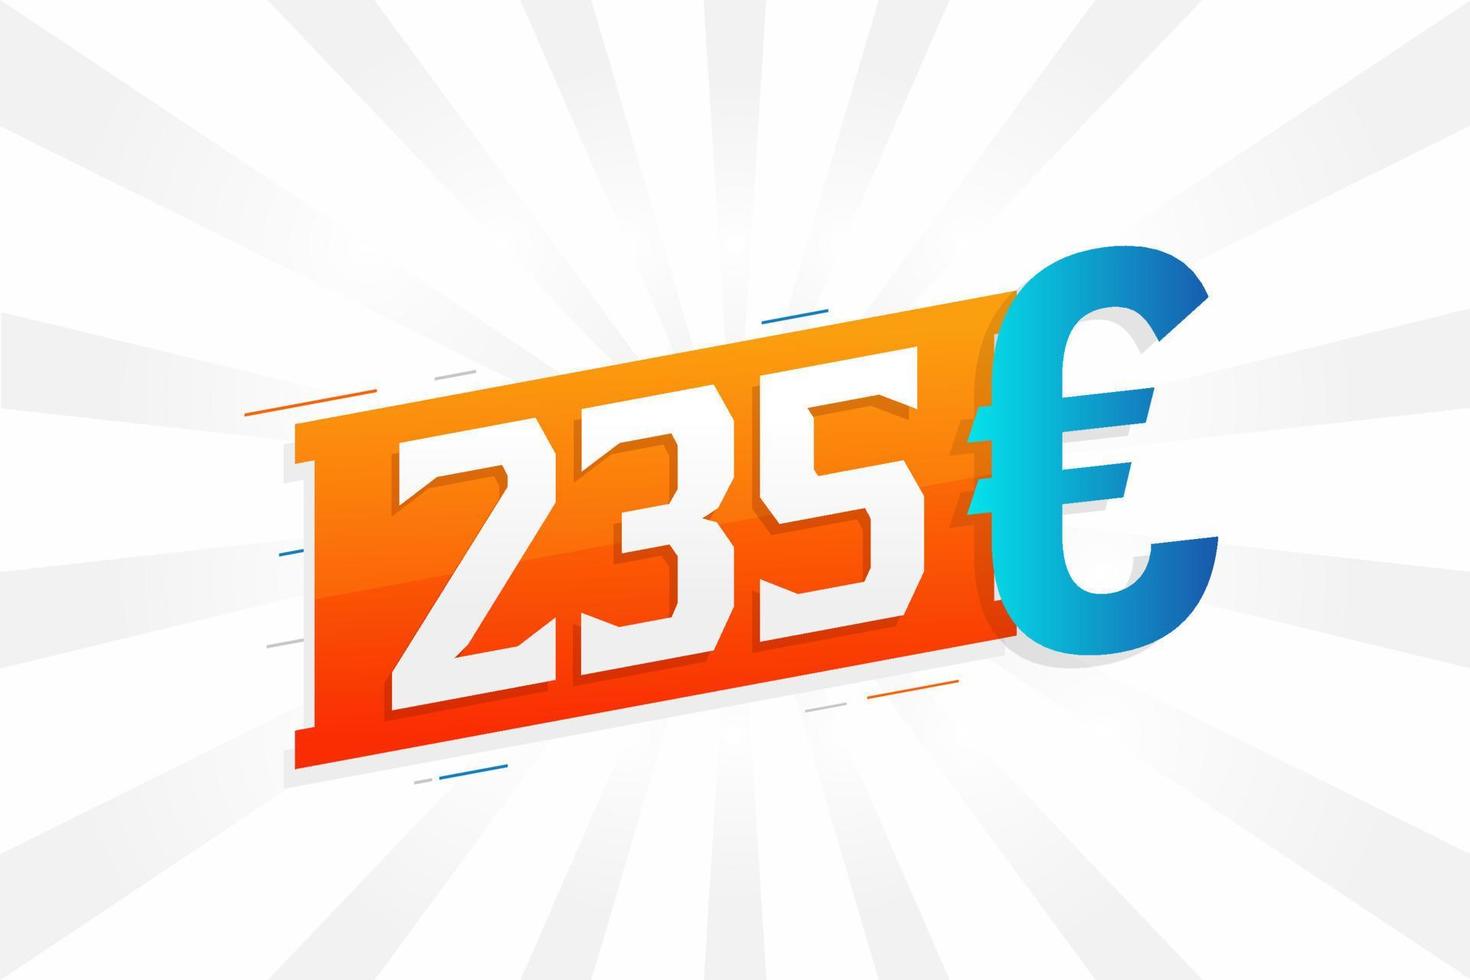 Símbolo de texto vectorial de moneda de 235 euros. 235 euros unión europea dinero stock vector